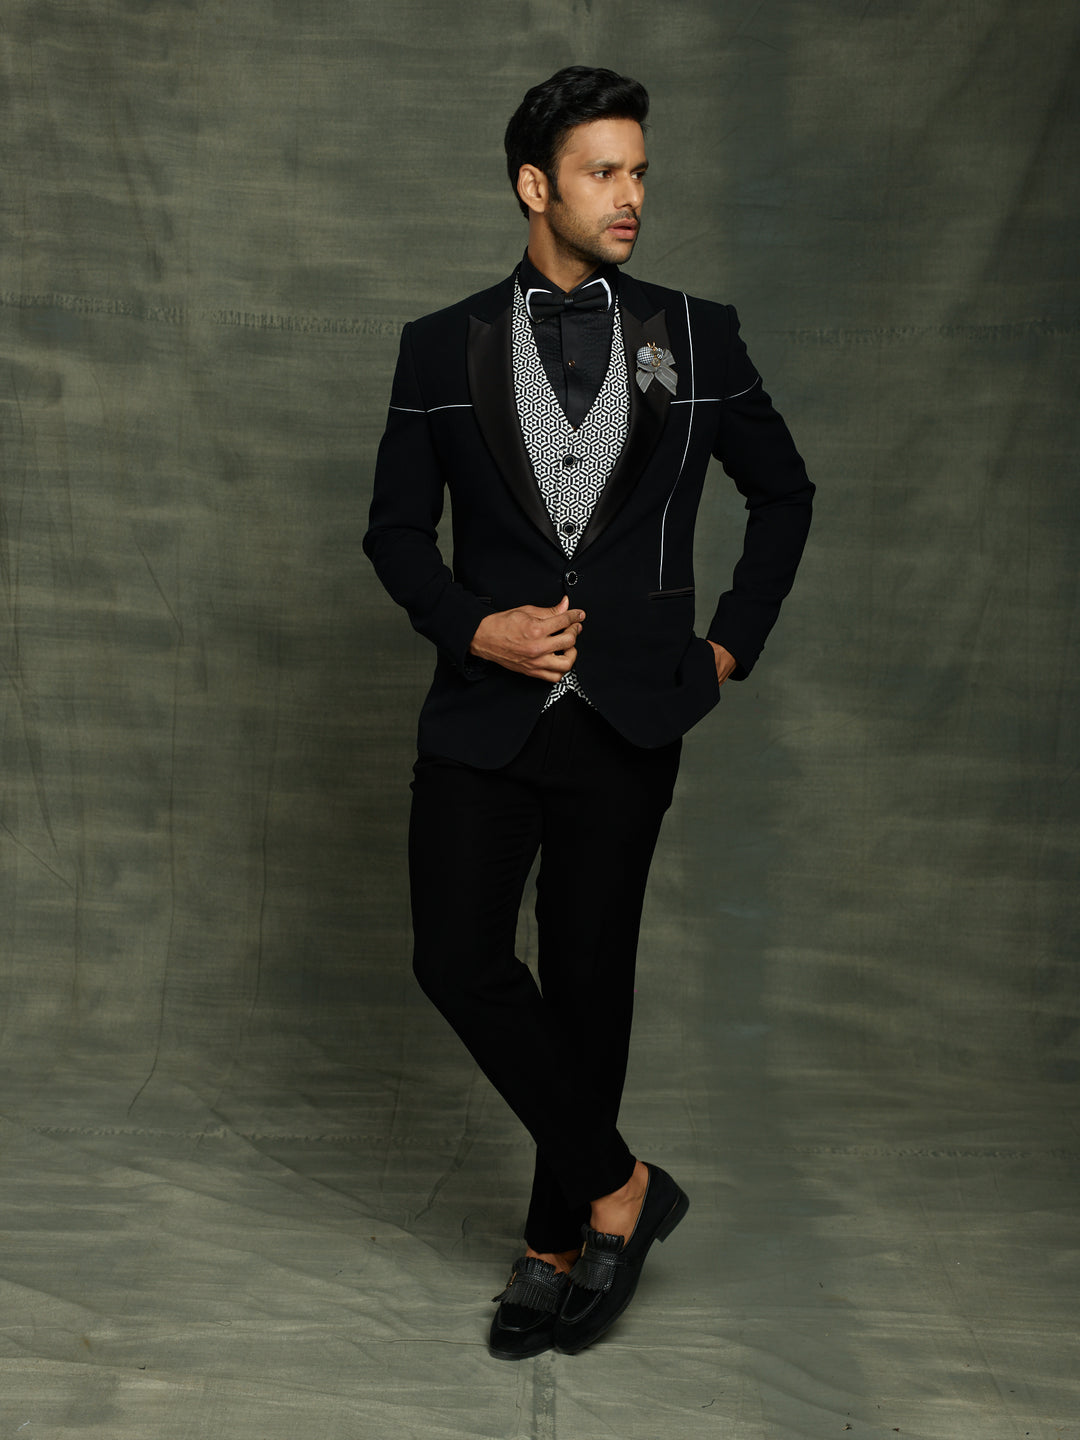 black suit with stylish waist coat.